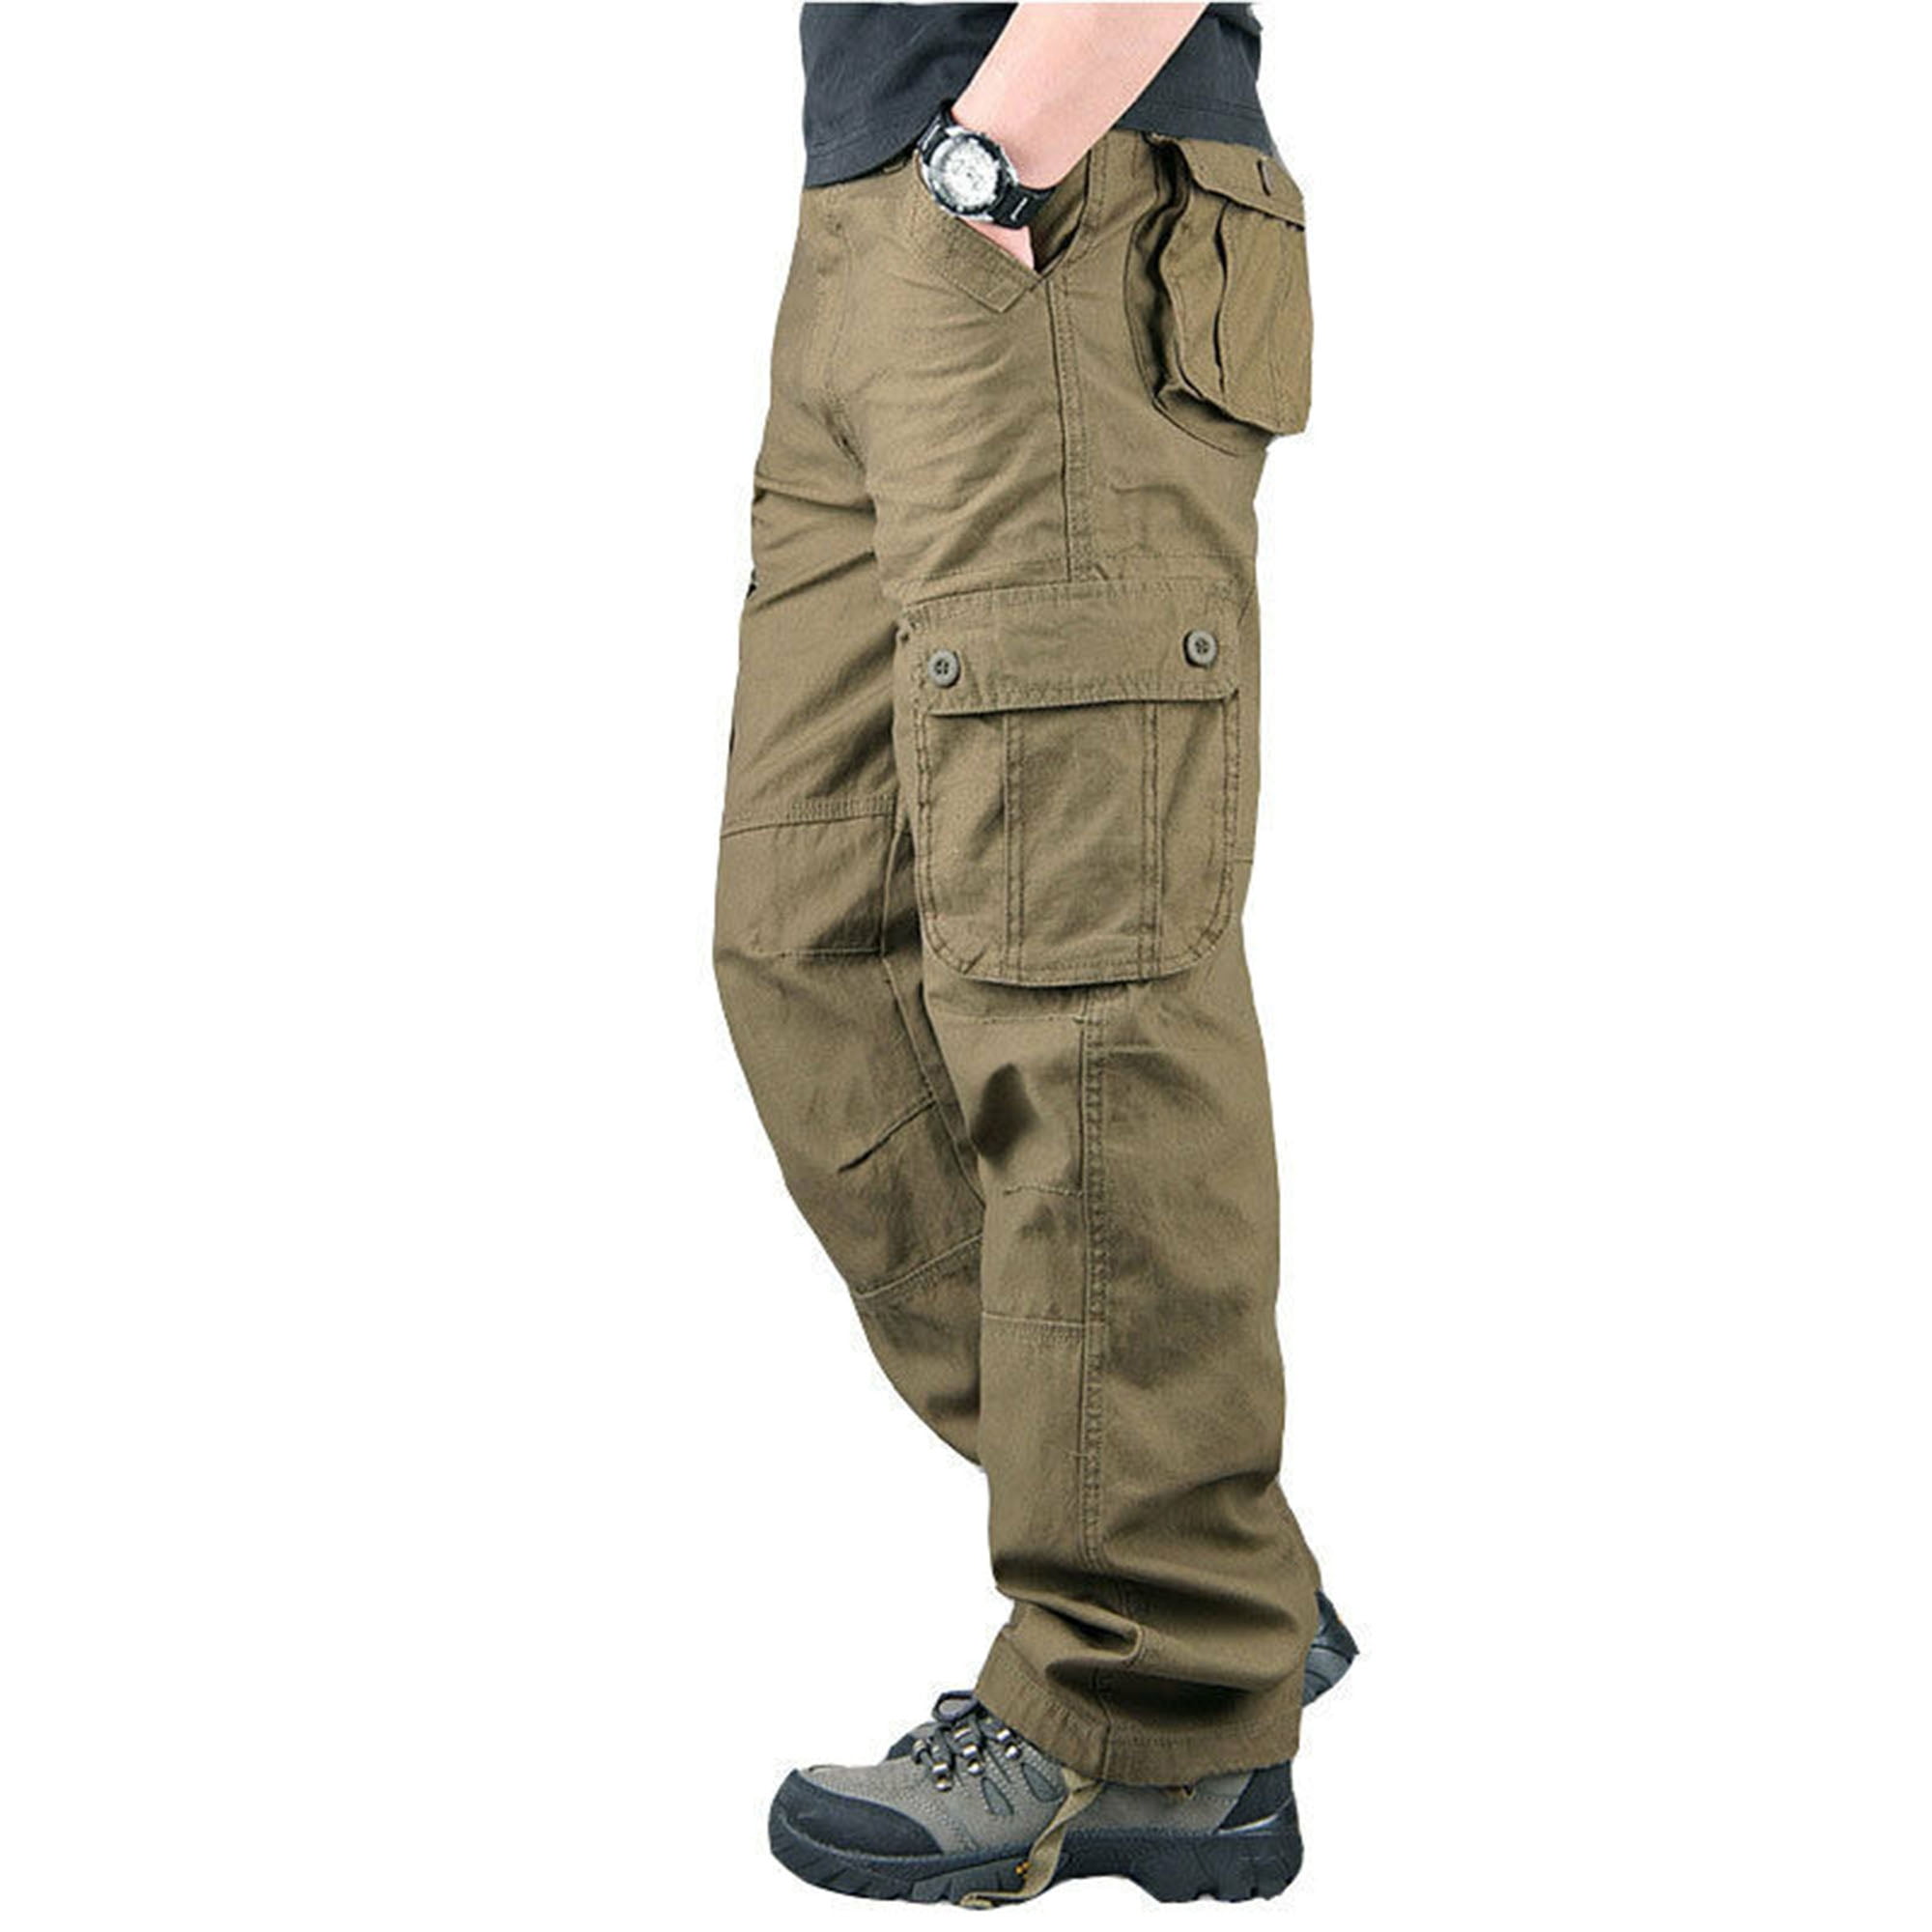 Pants Kombat men's comuflated khaki ripstop pants for men sports